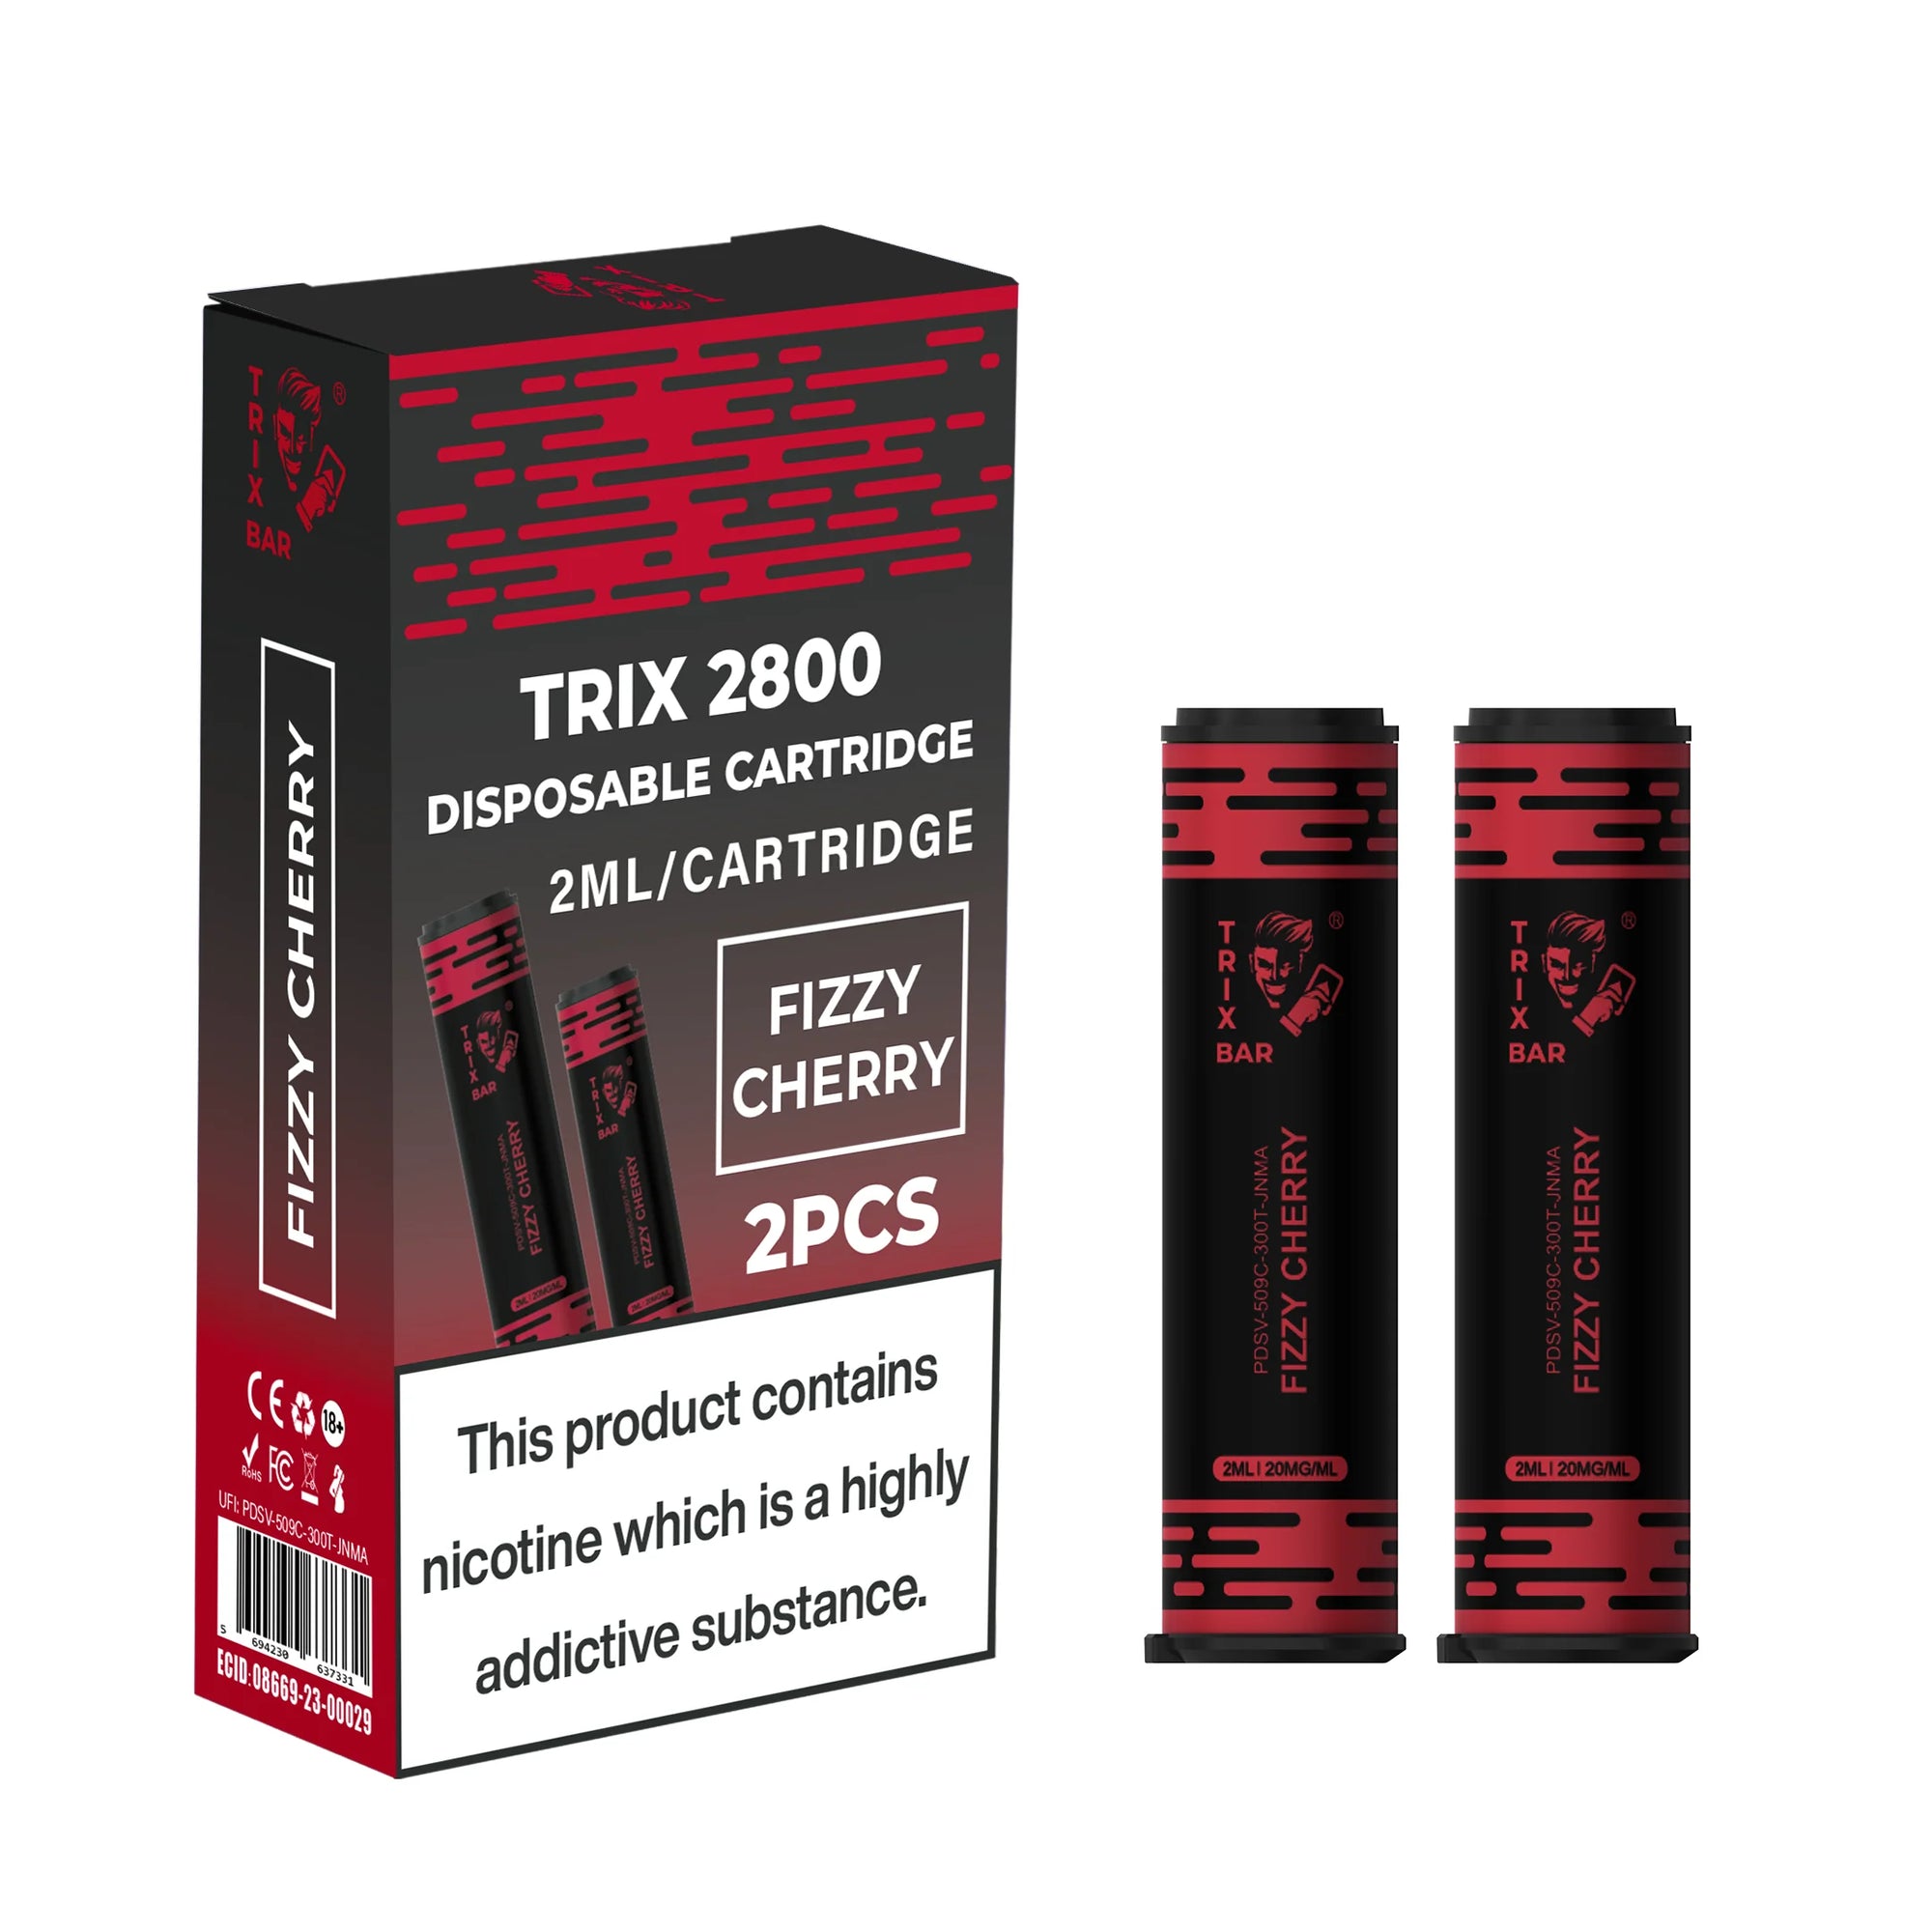 TRIX BAR MAX 2800 2x CARTRIDGES - Nammi.net